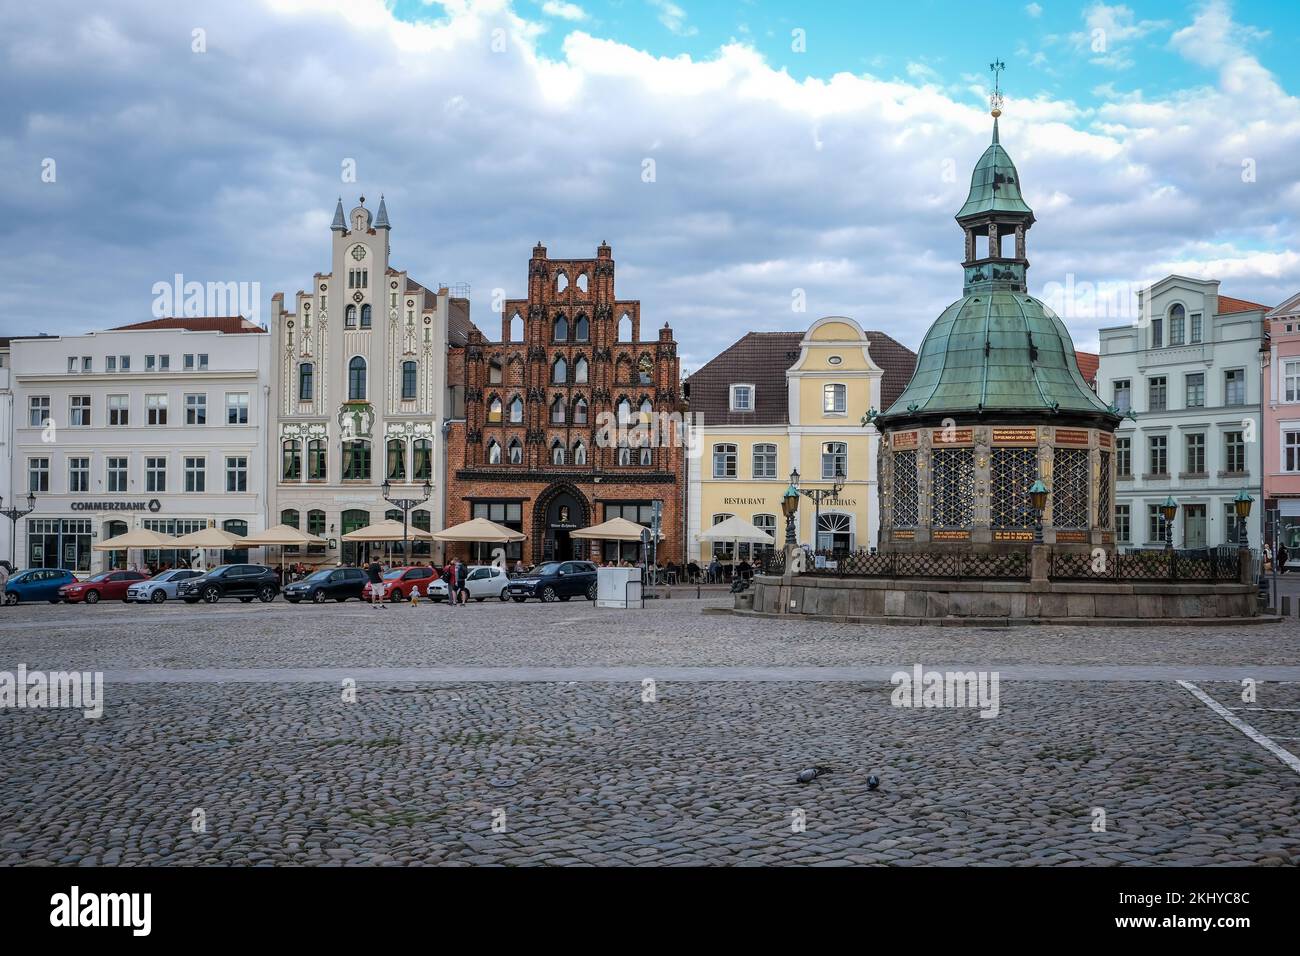 Wismar, Mecklenburg-Vorpommern, Deutschland - Stadtblick, renovierte Altstadt von Wismar, renovierte Häuser, renovierte Fassaden am Markt, inmitten der Stadt Stockfoto